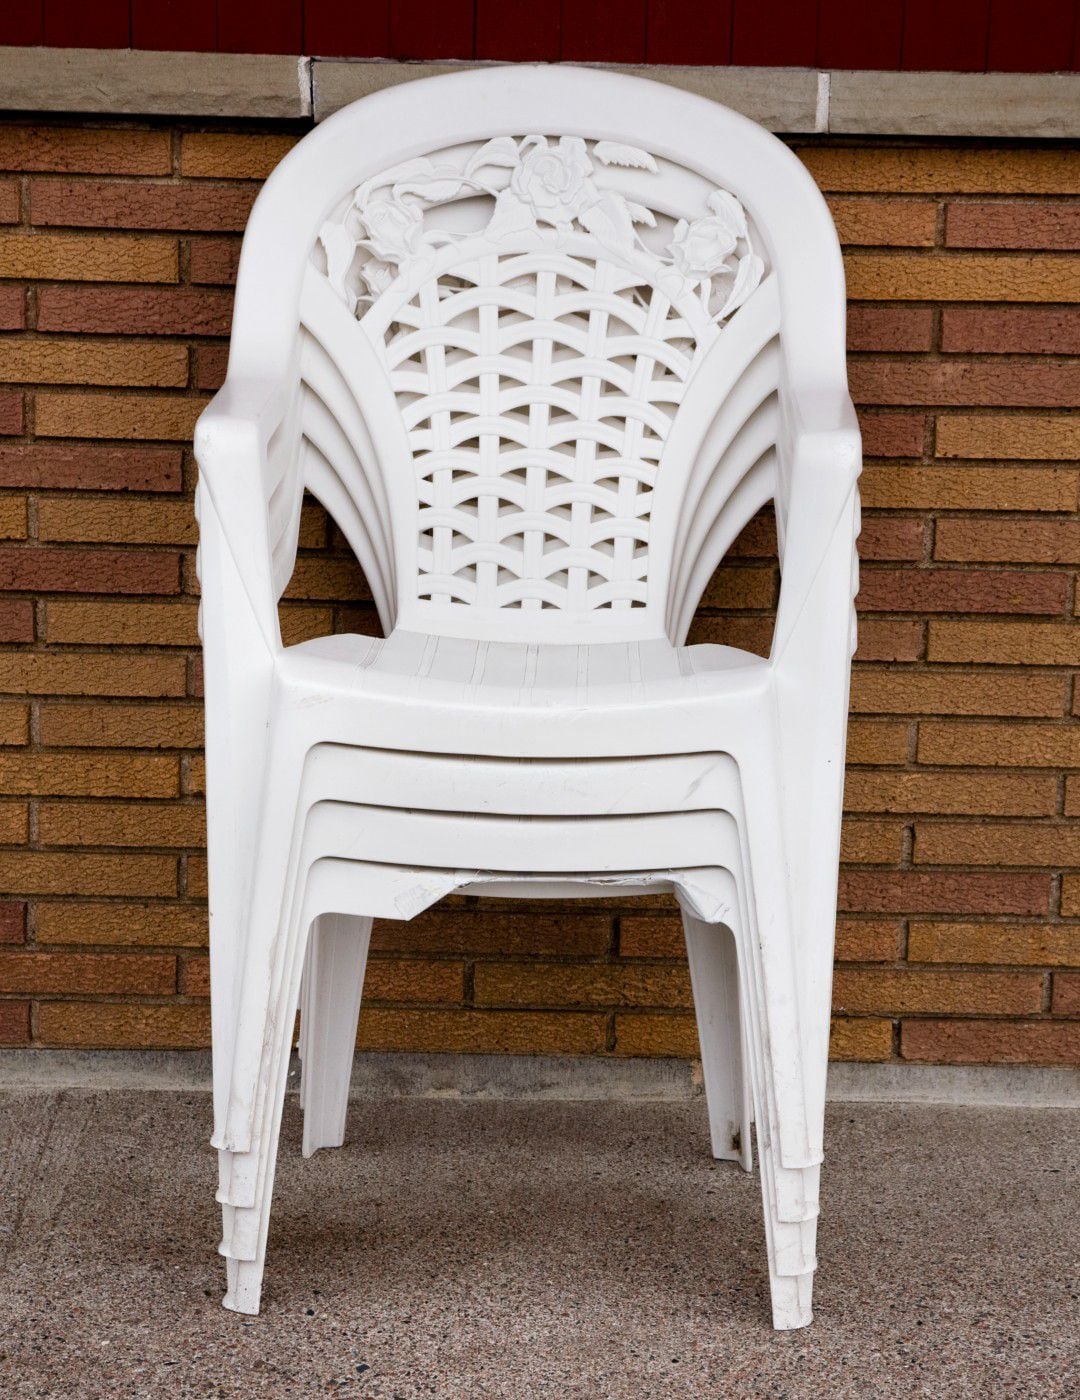 Es posible renovar las sillas de plástico con este truco de limpieza.